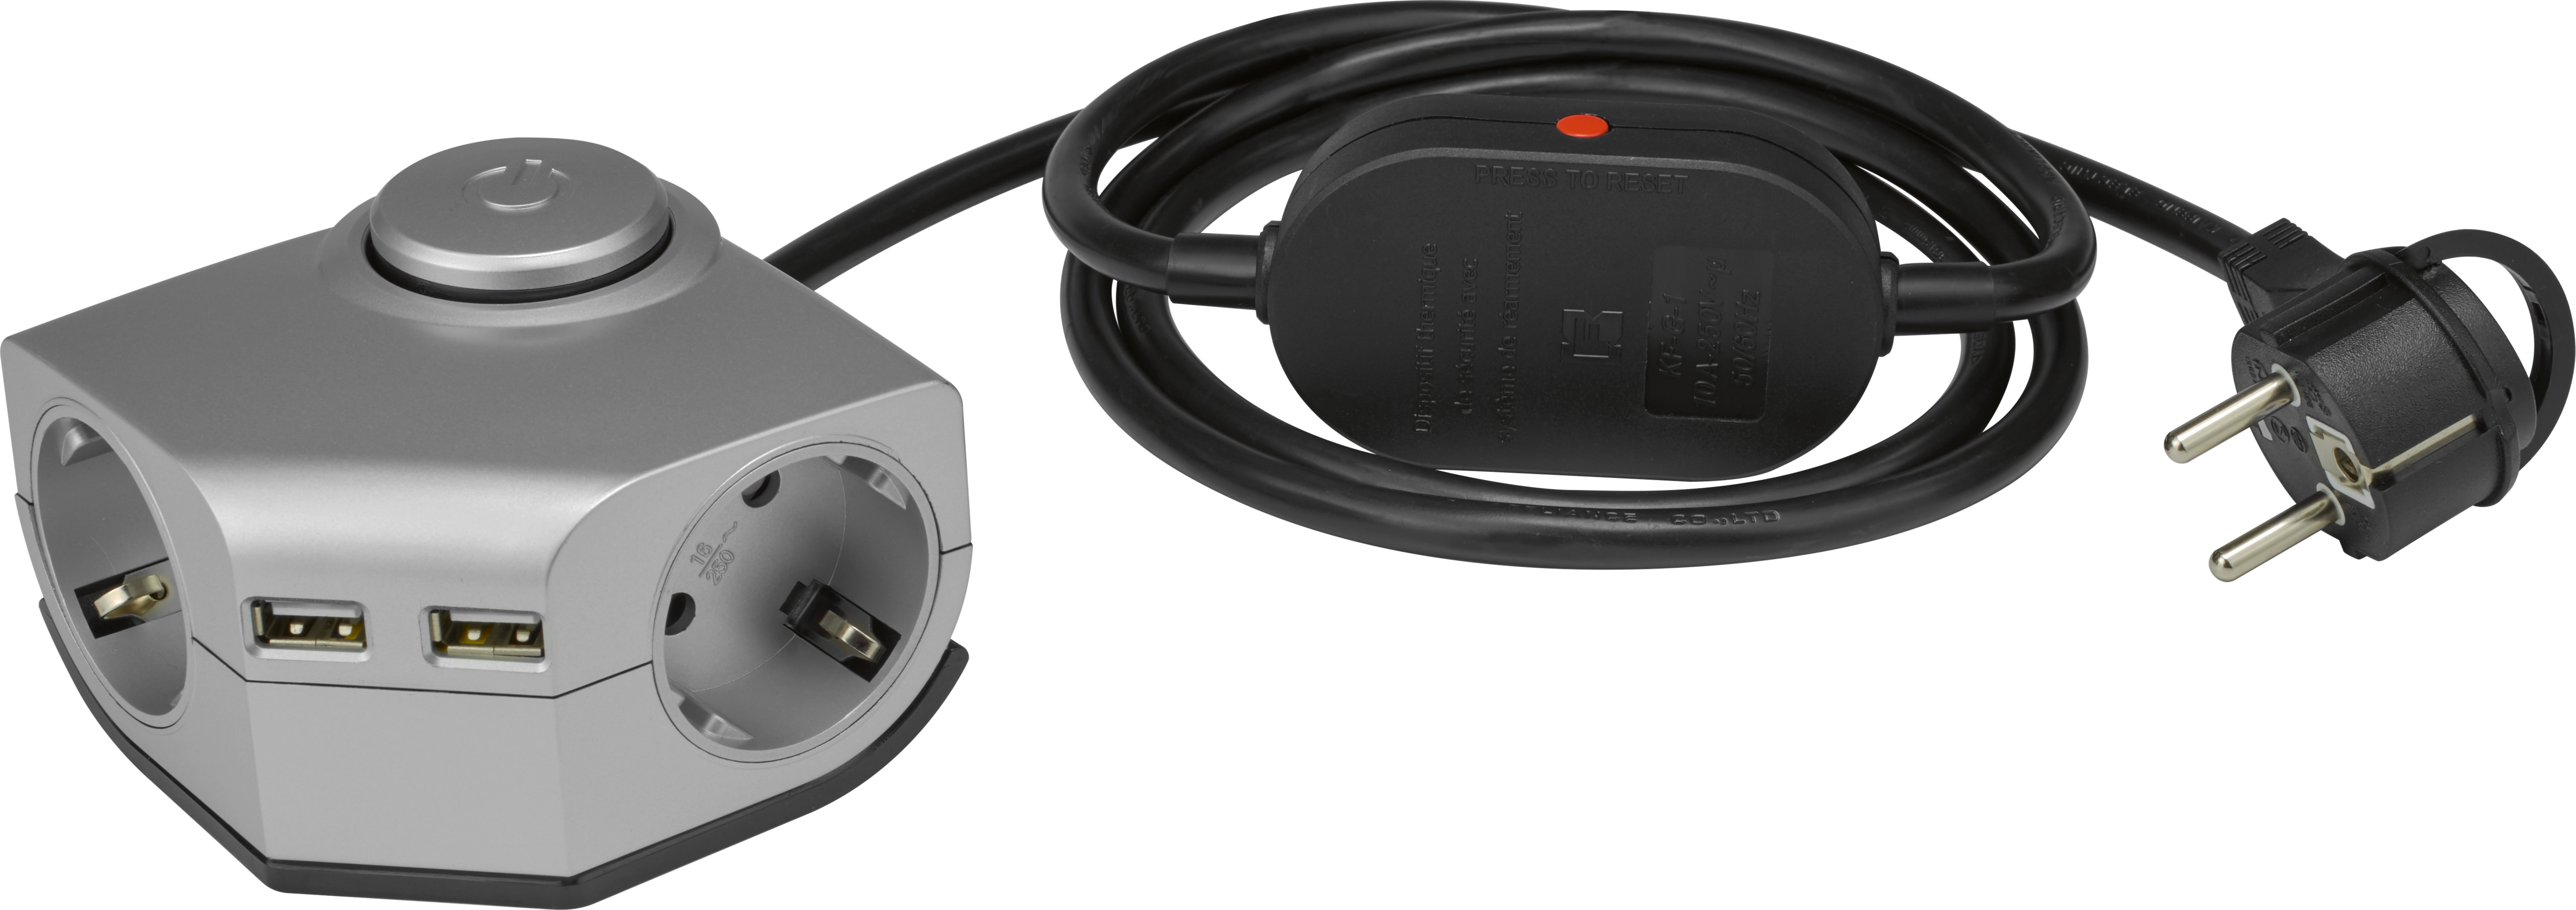 Steckdosen-Adapter mit 2 x USB Port Weiß kaufen bei OBI